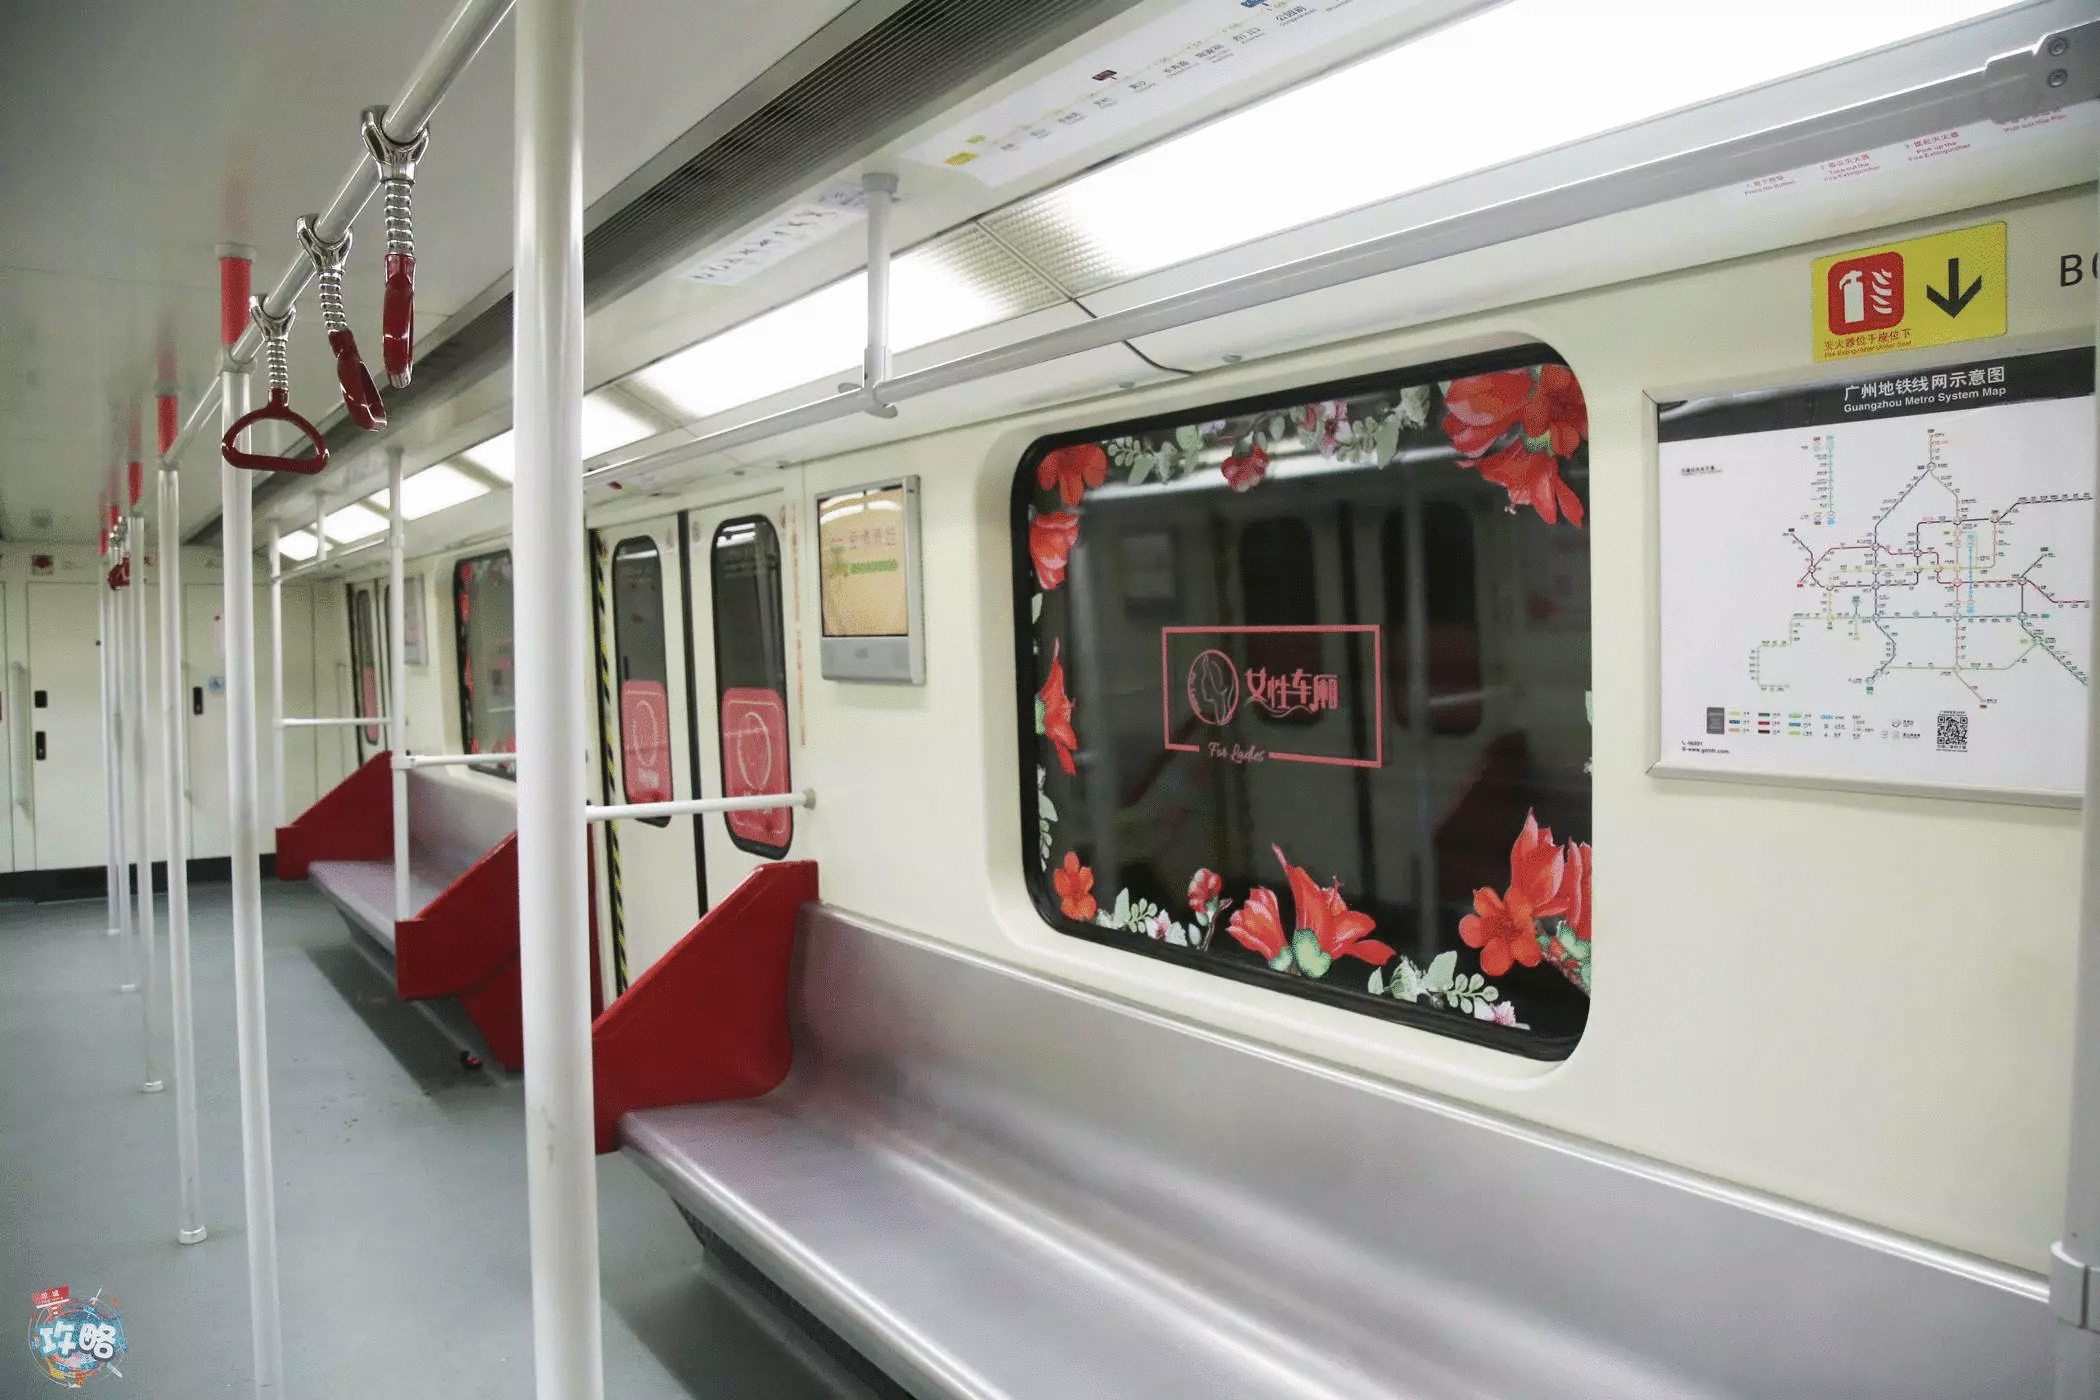 今天广州地铁"女性车厢"第一天试行!